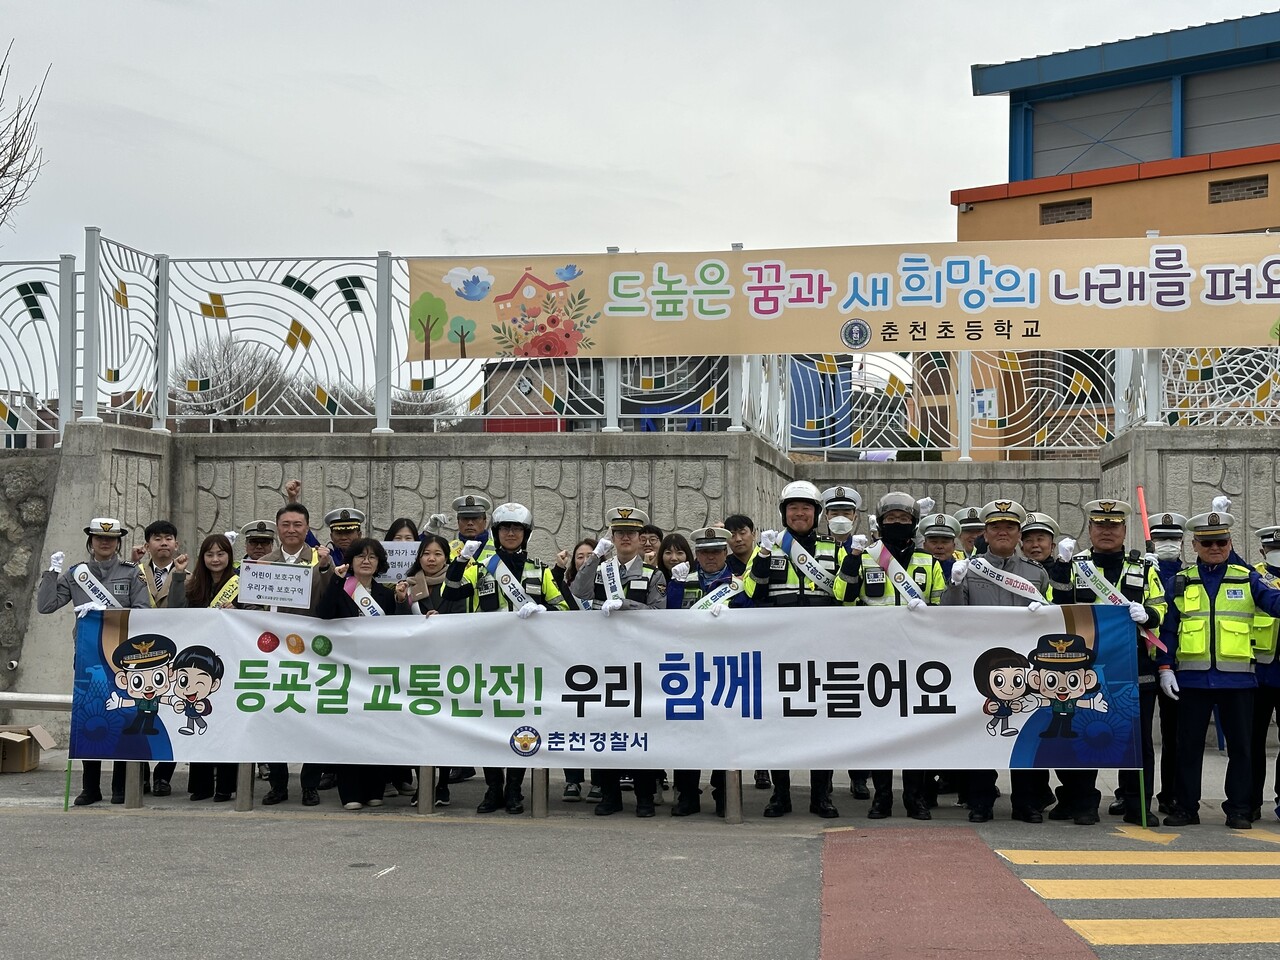 춘천경찰서는 25일 오전 8시 춘천초등학교 일원에서 새 학기 맞이 어린이 보호구역 교통안전 캠페인을 진행했다. (사진=춘천겅찰서)